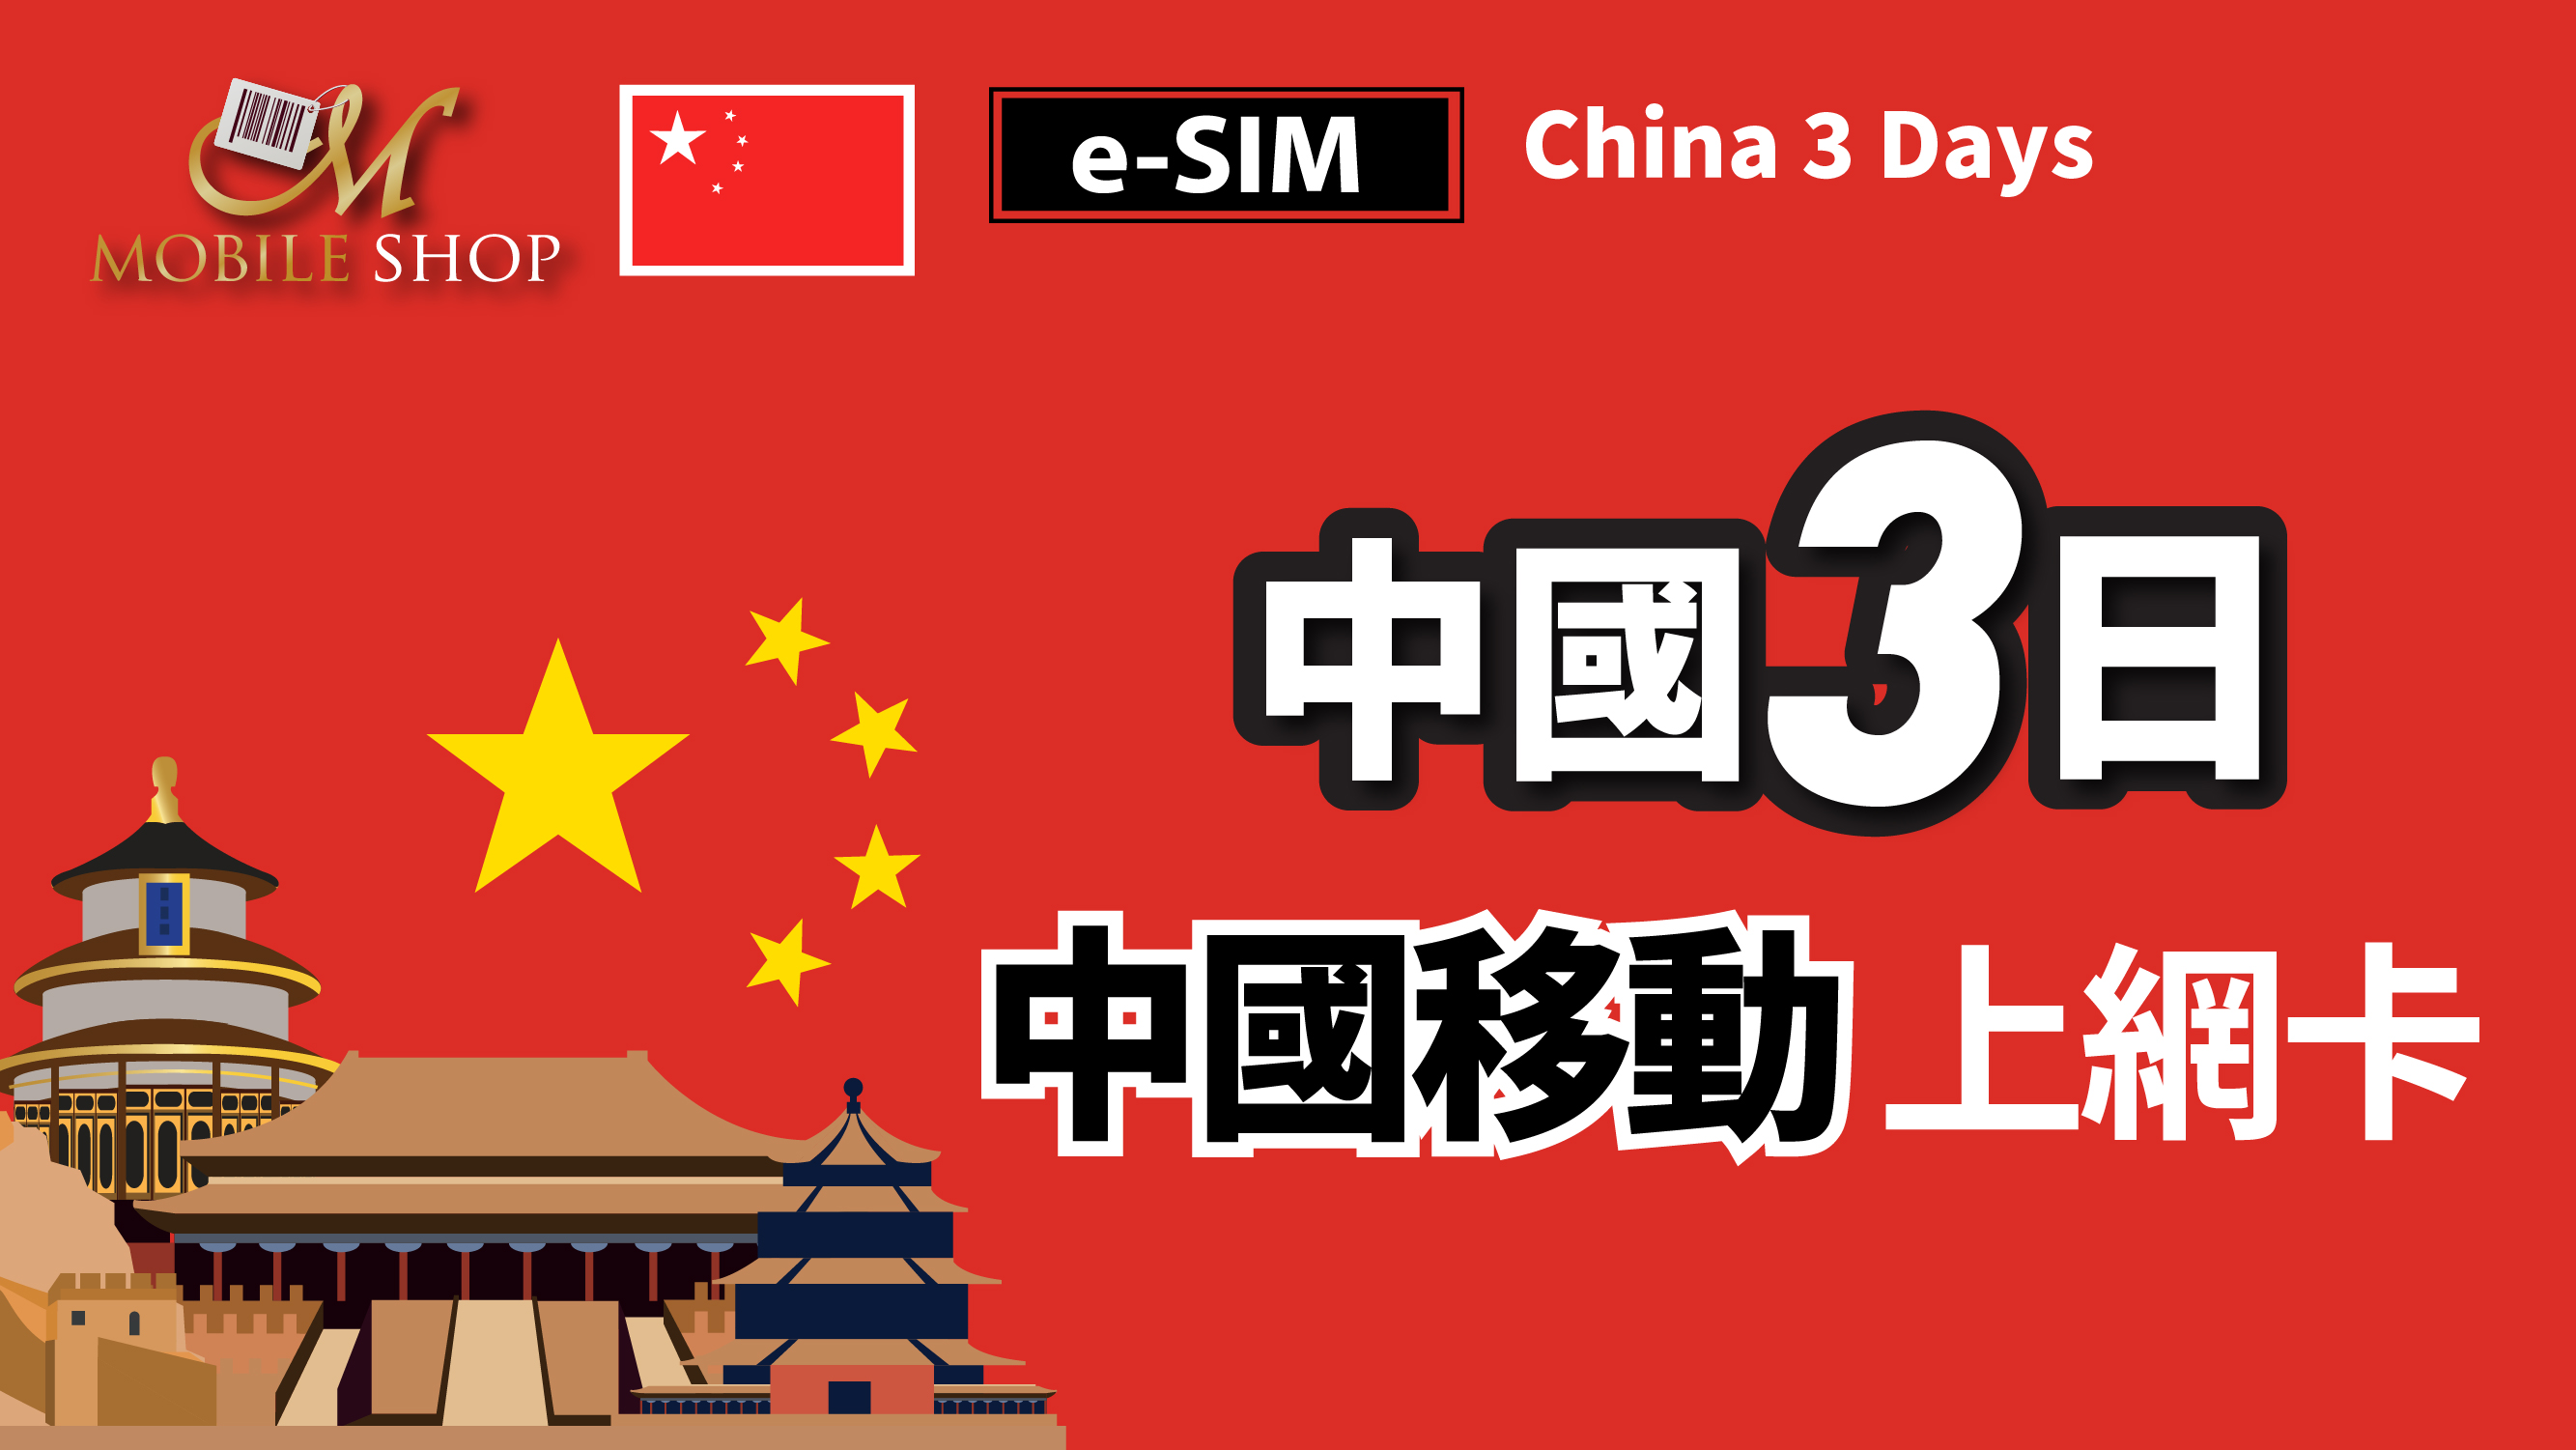 eSIM / China 3days